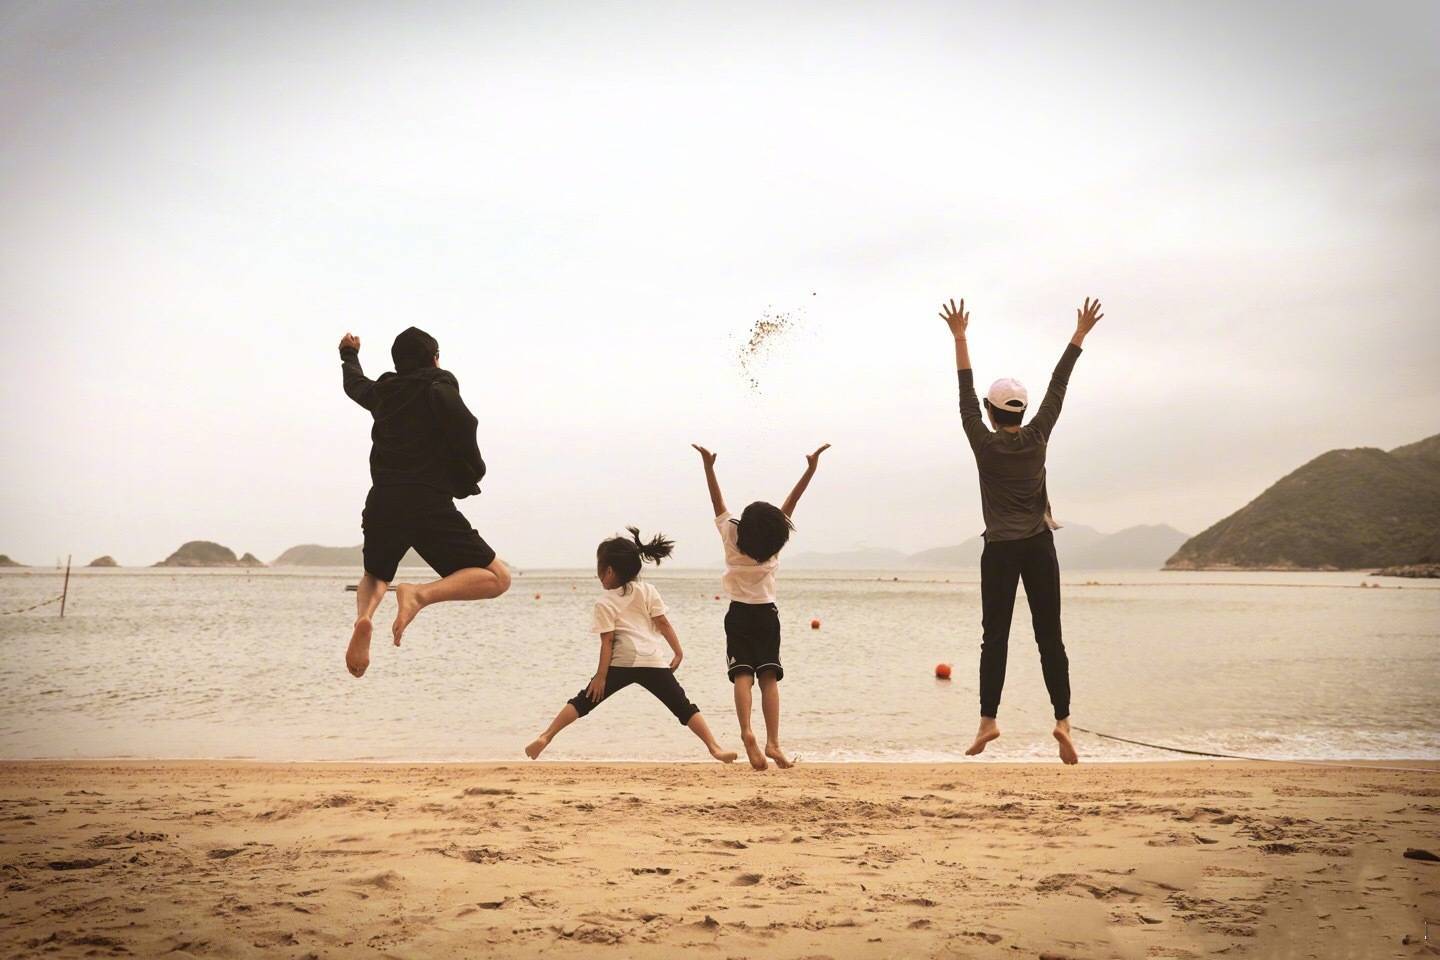 孙俪晒海边度假照,一家四口在沙滩上一跃而起,画面幸福温馨